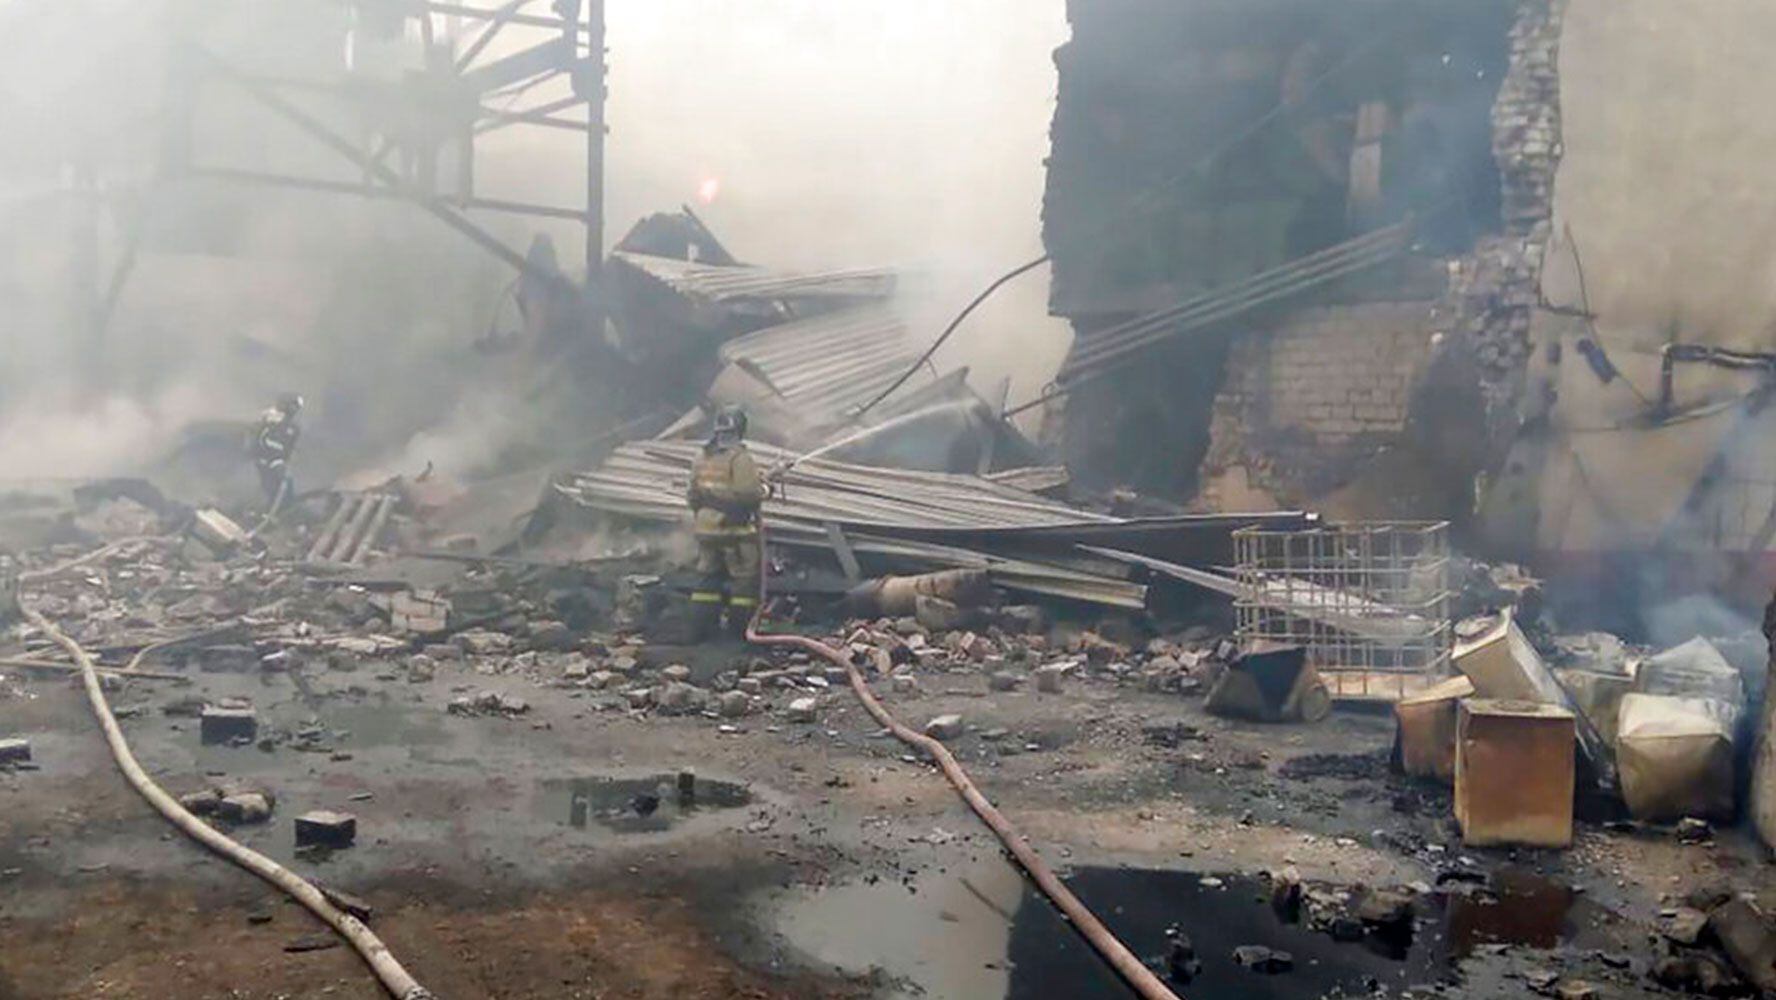 Explosión en una planta de pólvora deja 16 muertos en Rusia